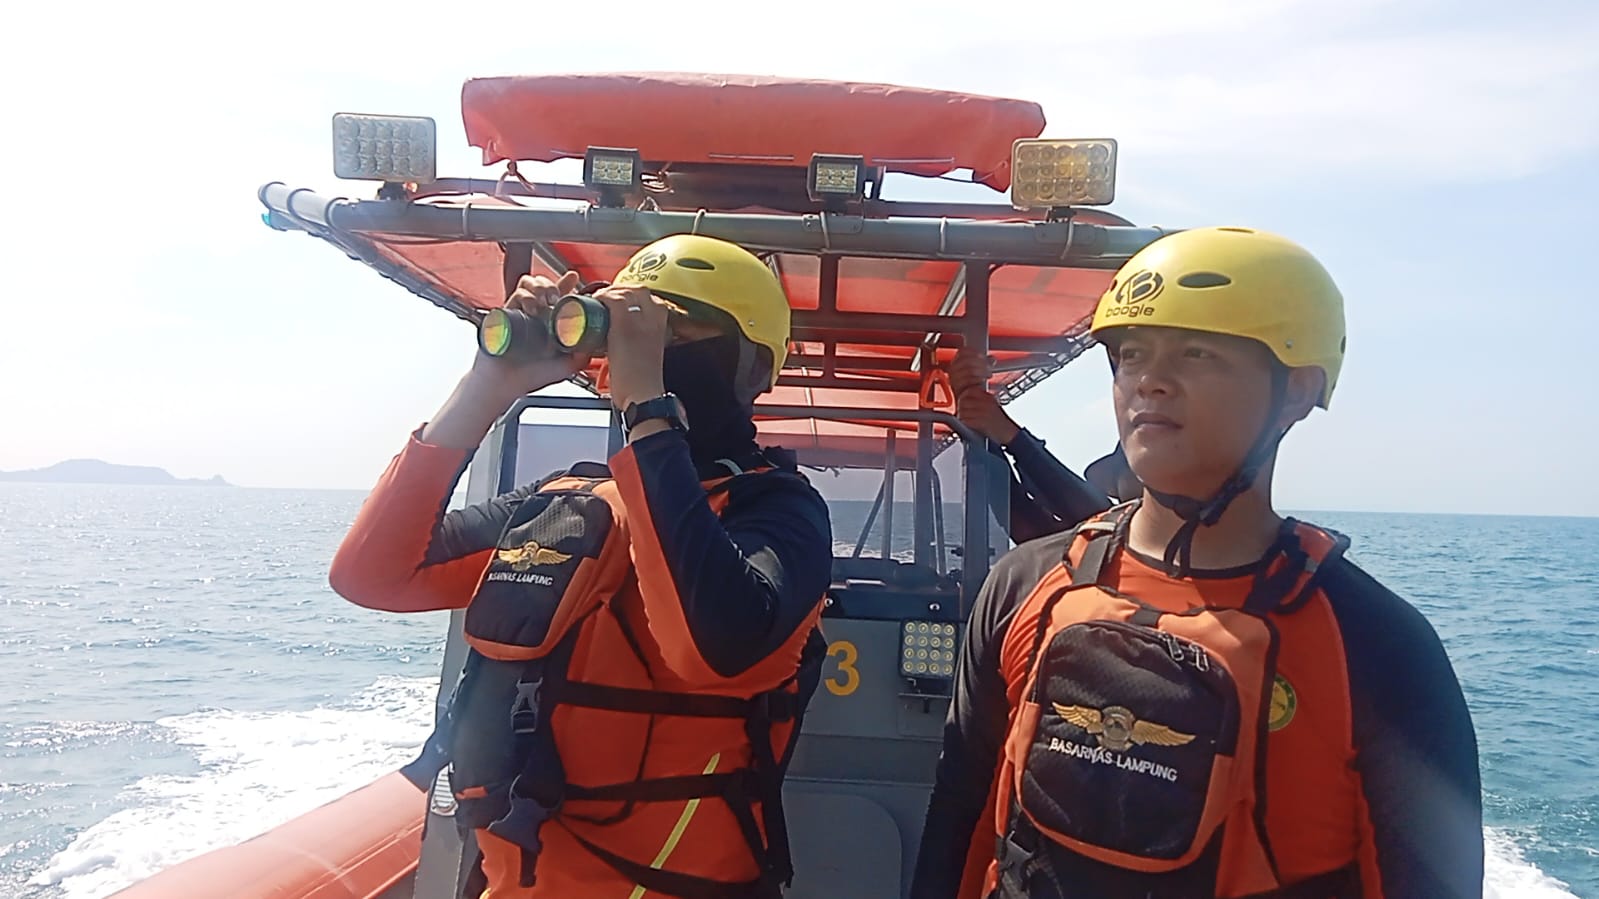 Pencarian Penumpang Yang Lompat Dari Kapal di Pulau Rimau Kalianda Hingga Hari Ketiga Masih Nihil